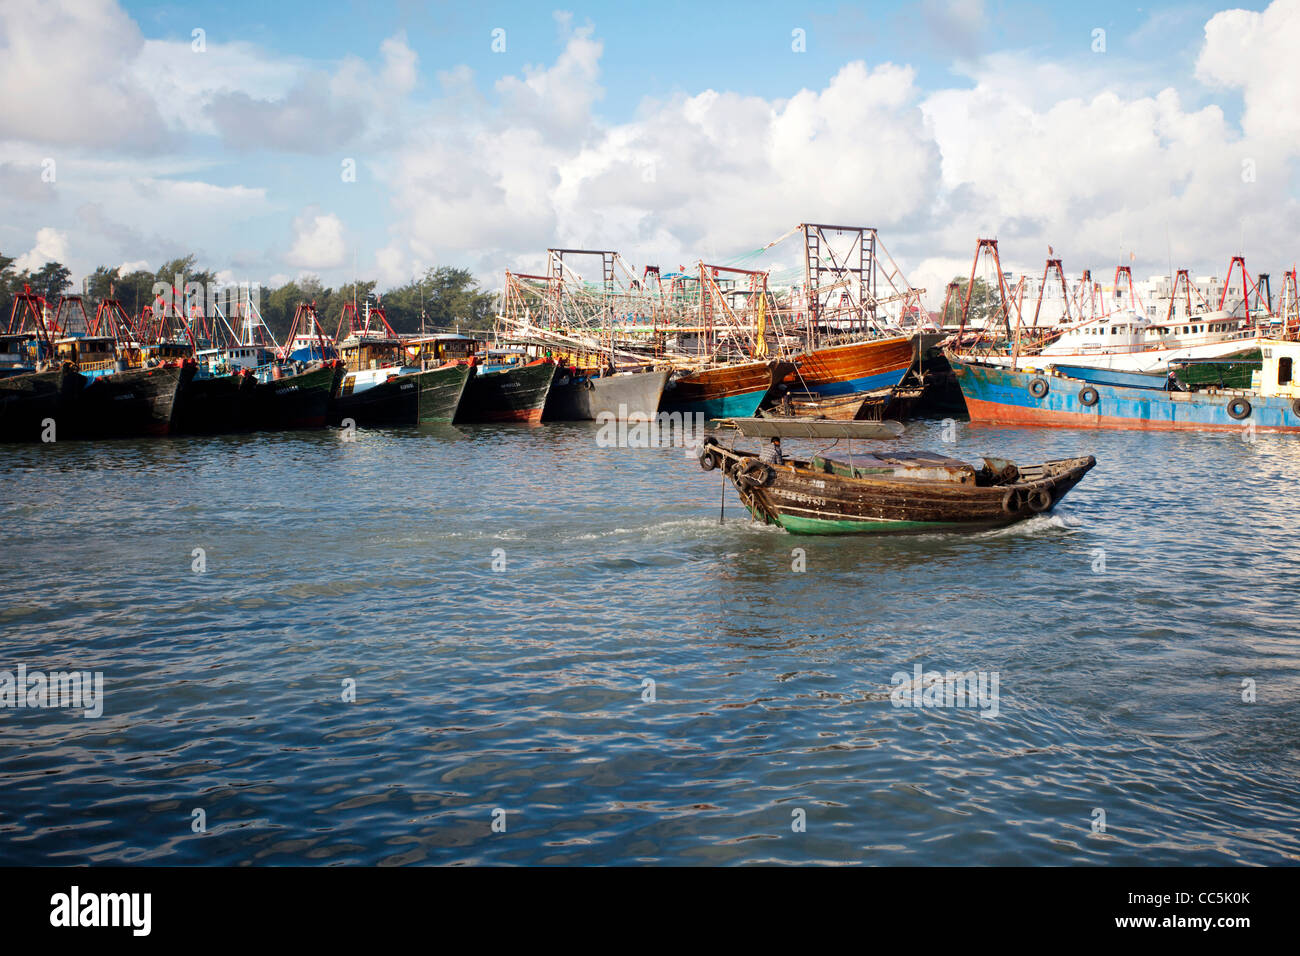 La conduite d'un bateau de pêcheur à la pêche, les fruits de mer, Marché, Guangxi Beihai , Chine Banque D'Images